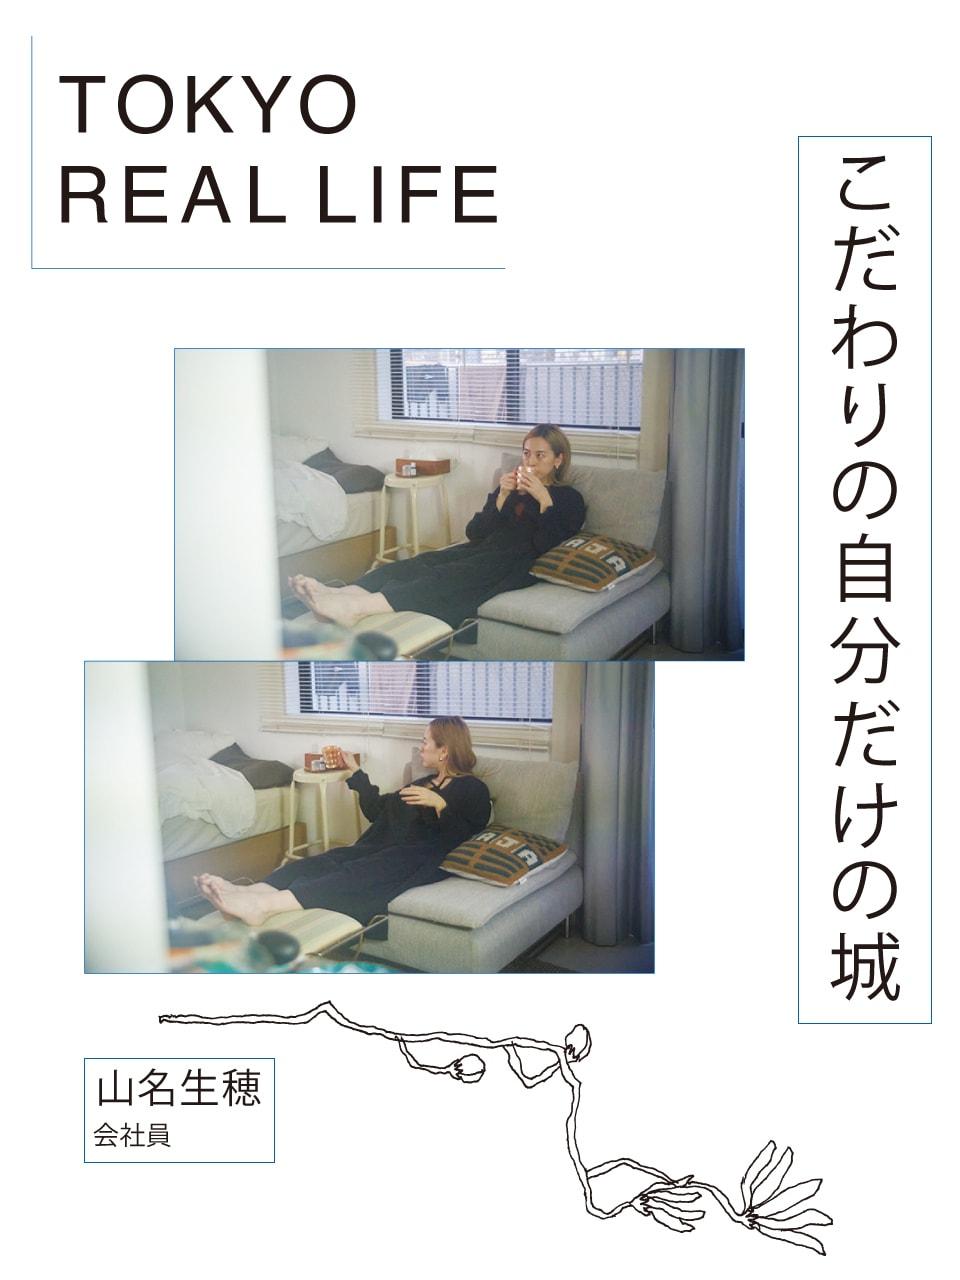 「久々の一人暮らしは まだまだ発展途上」【 TOKYO REAL LIFE vol.3 山名生穂さん】